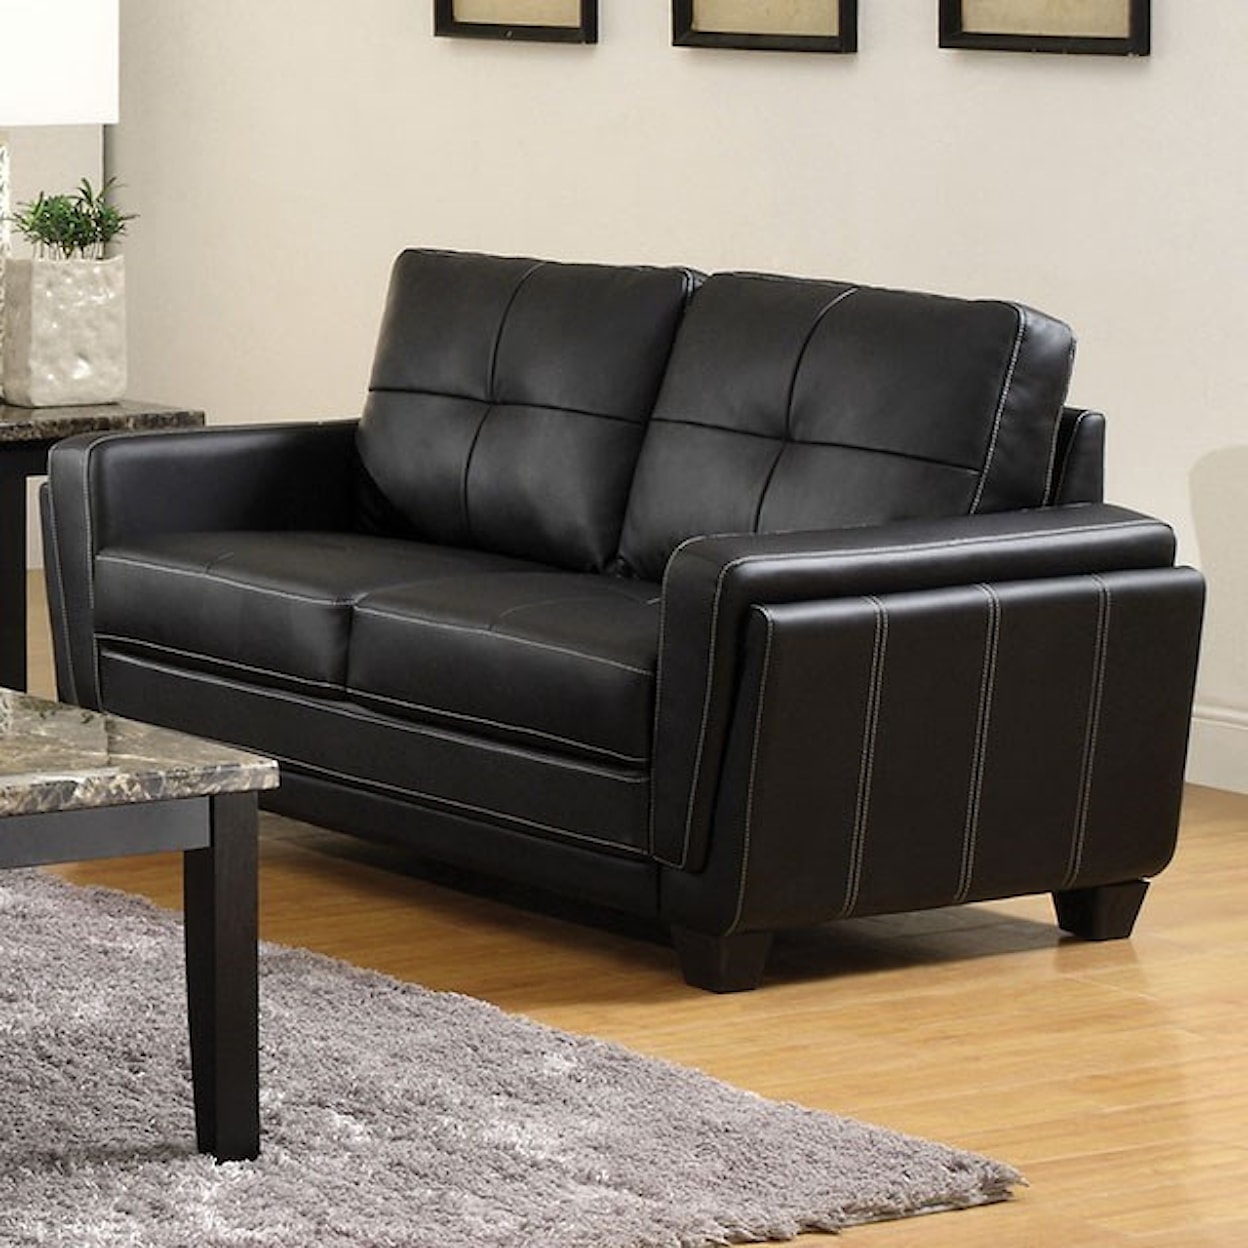 Furniture of America Blacksburg Sofa + Love Seat